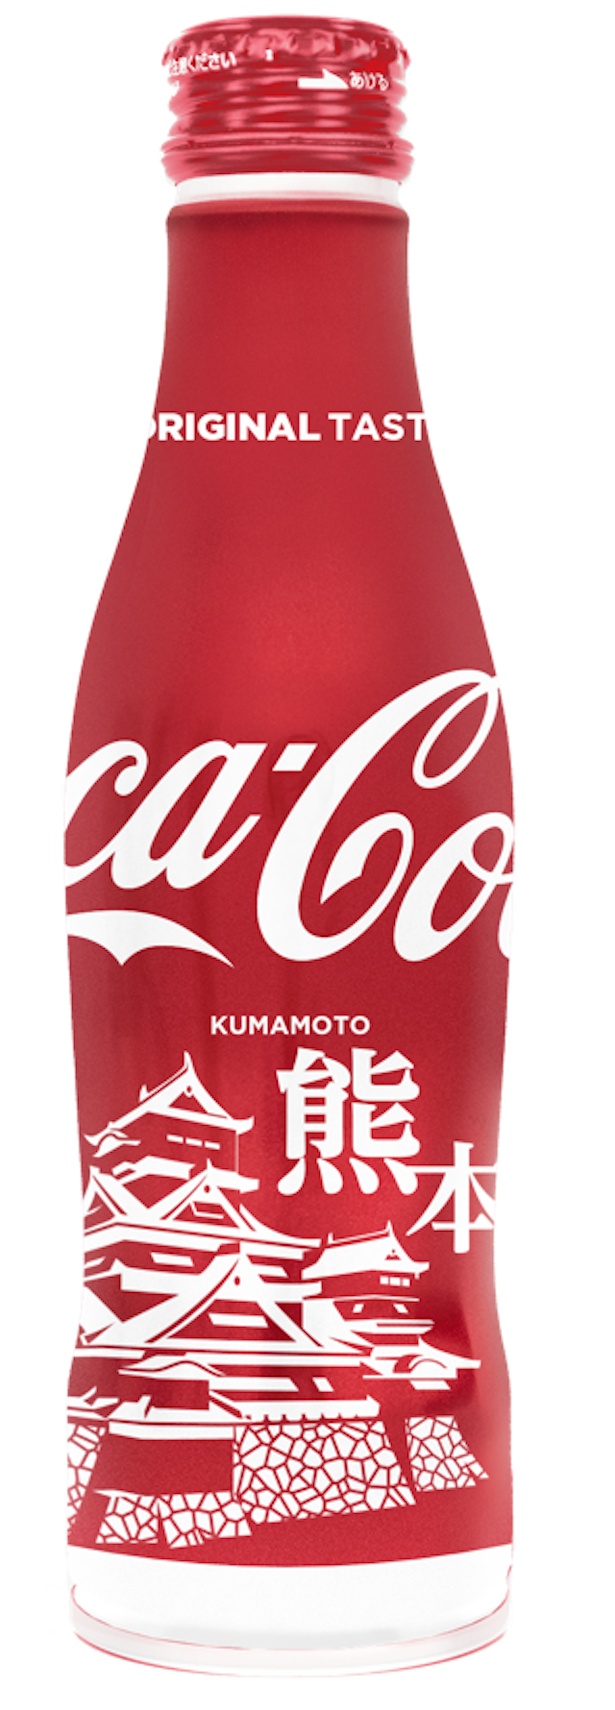 コカ コーラに地域デザイン登場 地域限定ボトル発売 ウォーカープラス